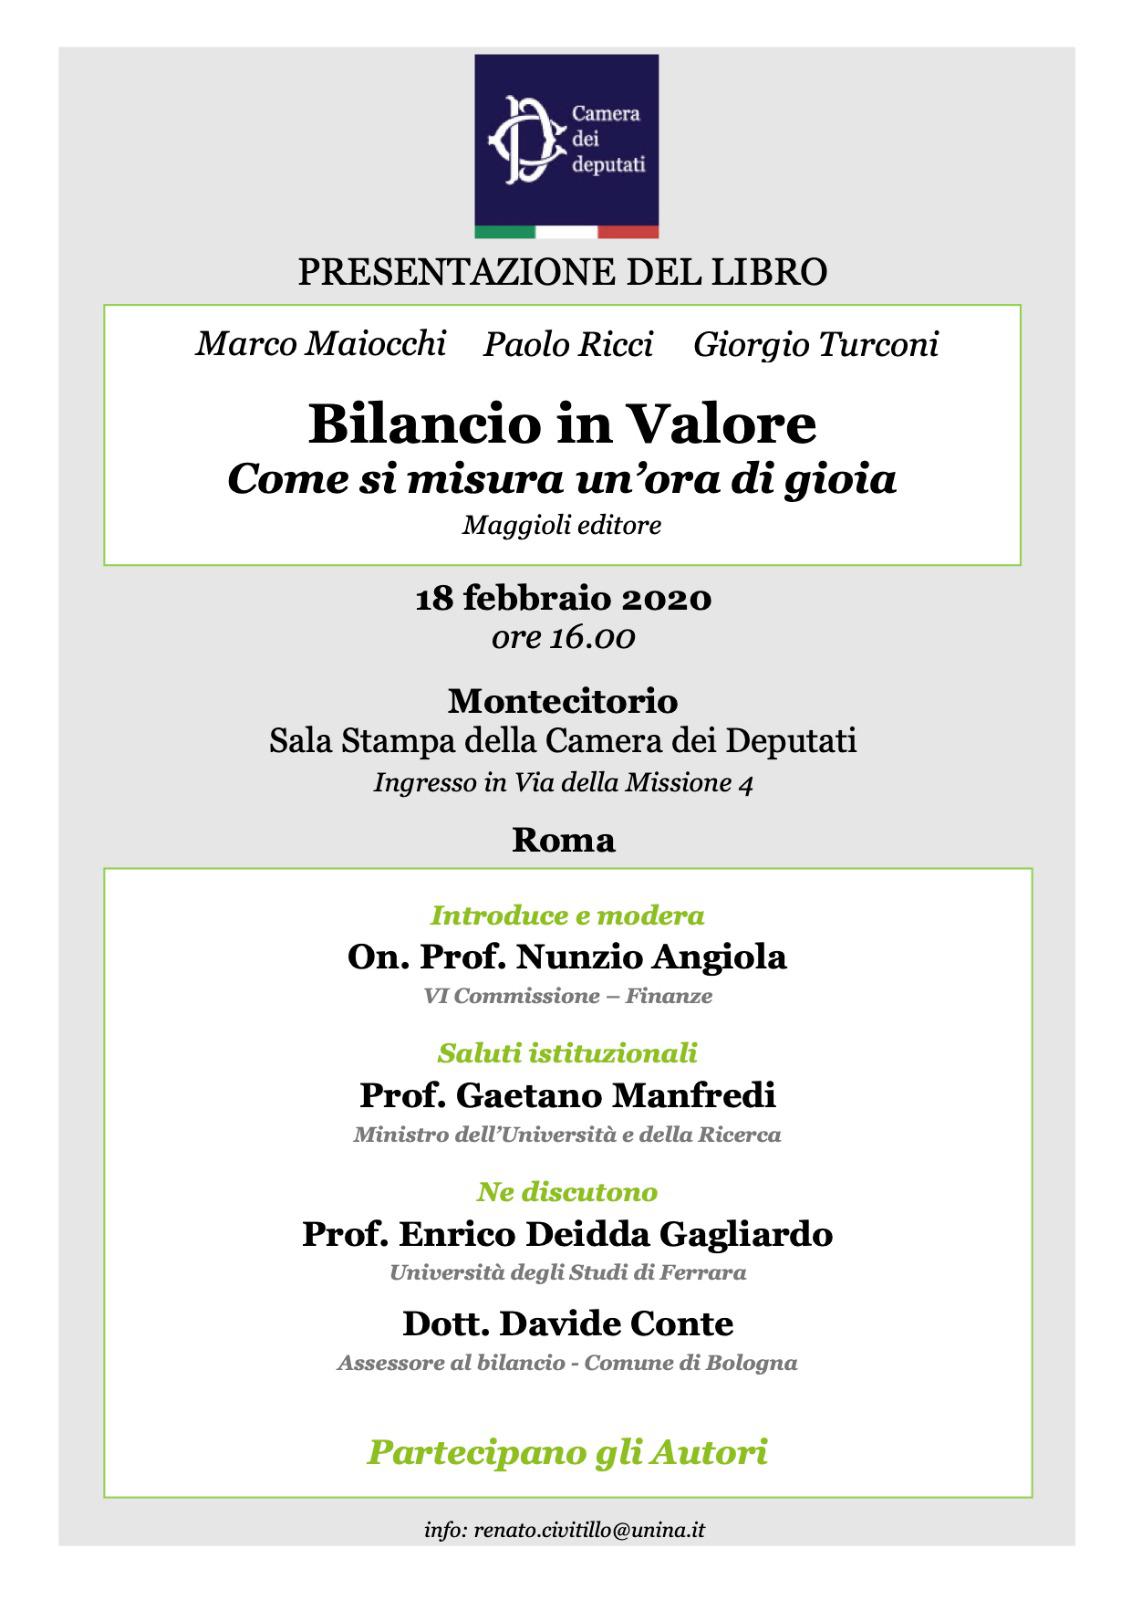 Il Prof. Enrico DEIDDA GAGLIARDO interviene alla presentazione del Libro "Bilancio in Valore. Come si misura un'ora di gioia" (Turconi, Maiocchi e Ricci, 2019)